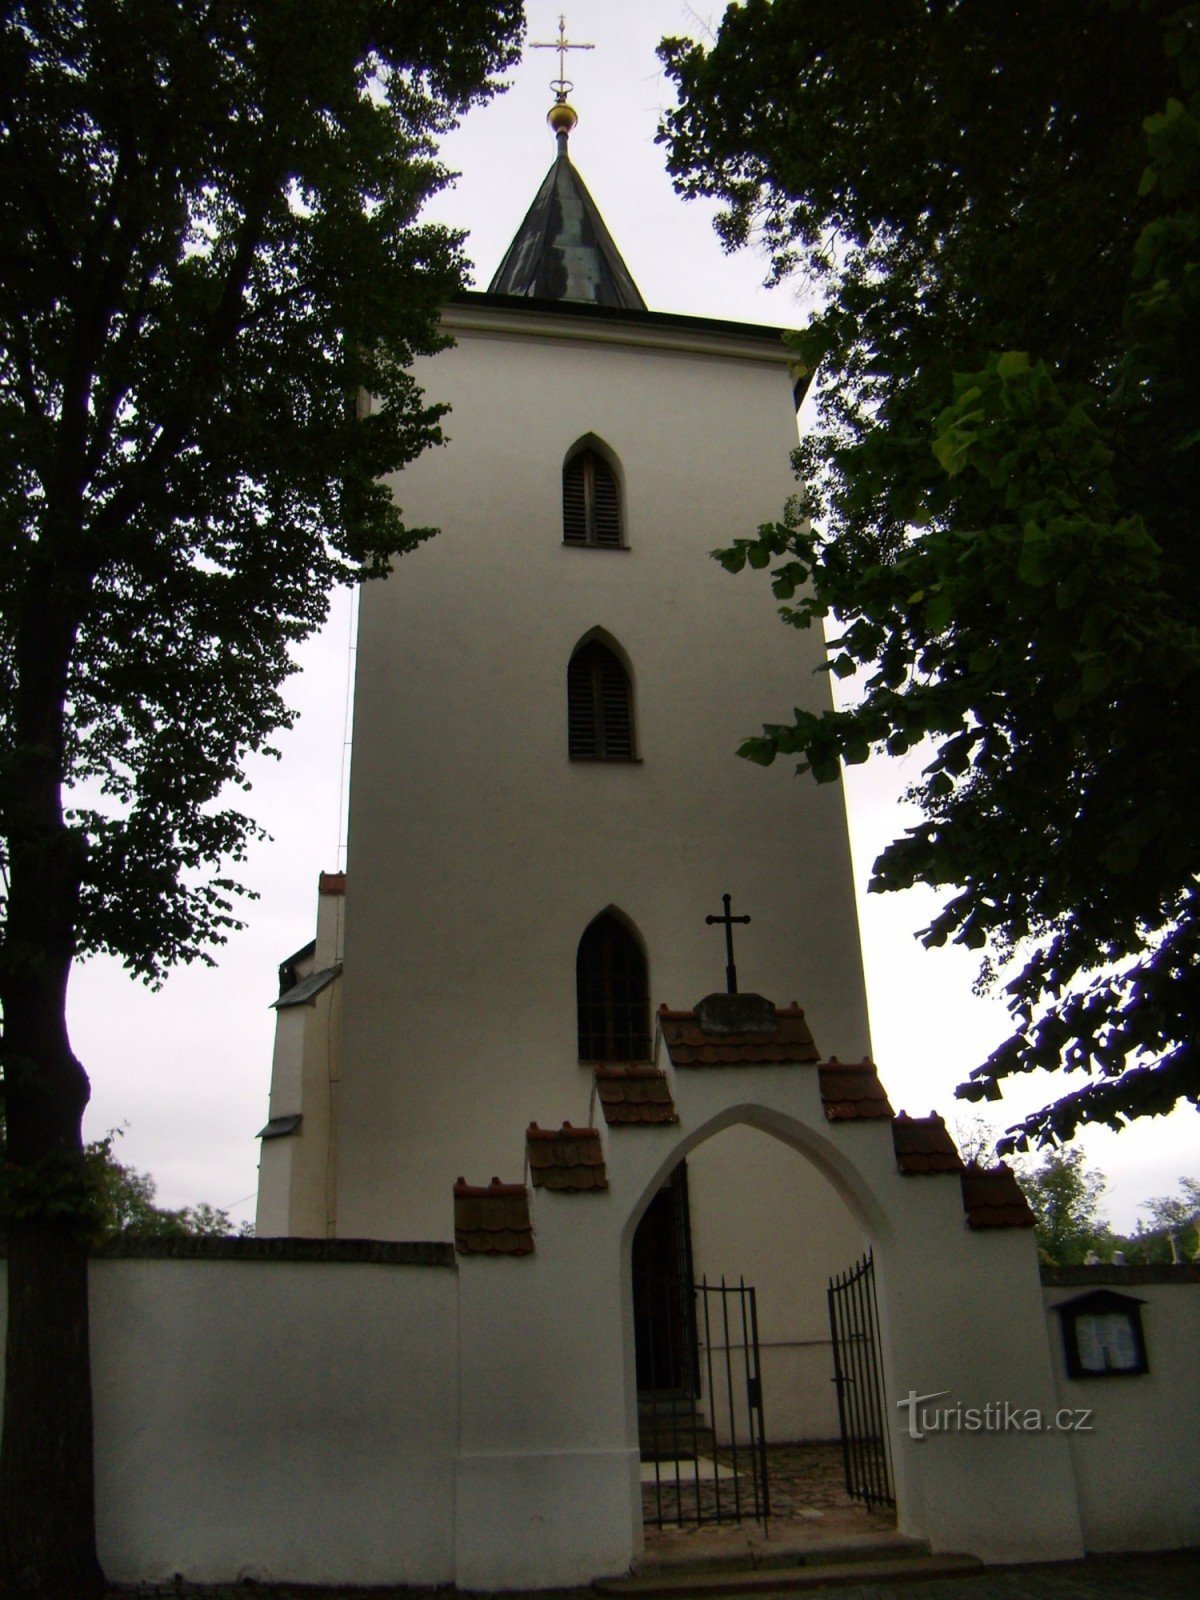 Лелековице - церковь